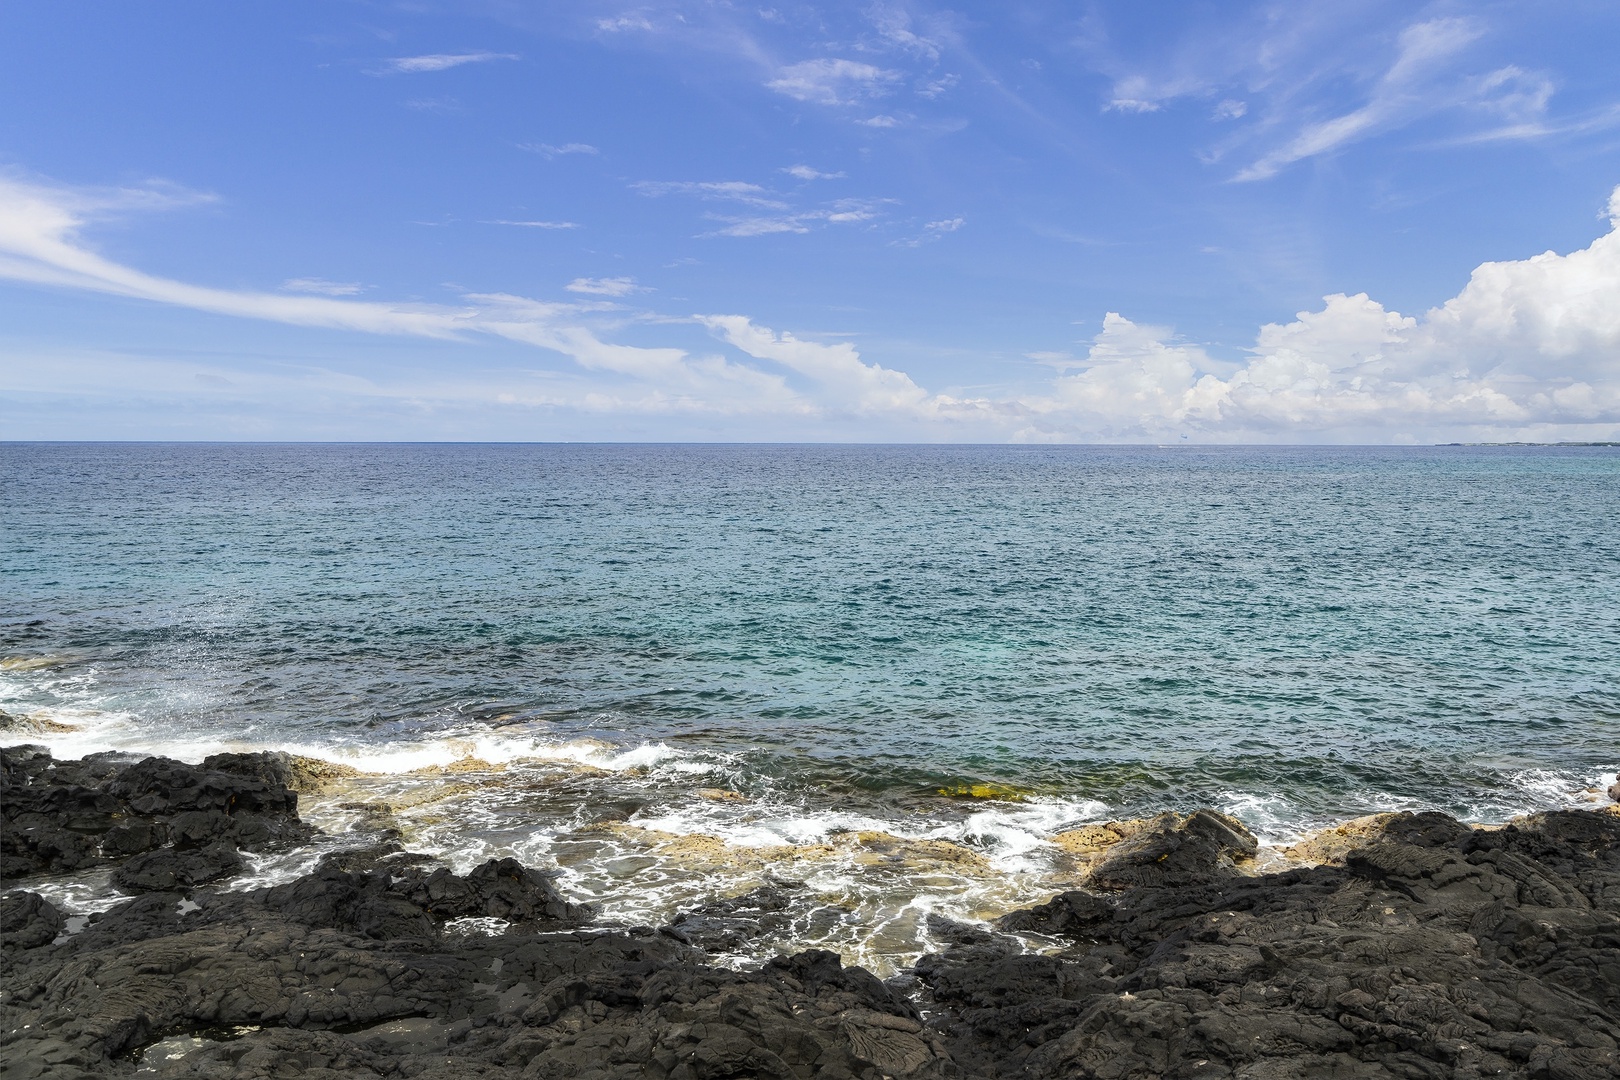 Kailua Kona Vacation Rentals, Ali'i Point #7 - Oceanfront